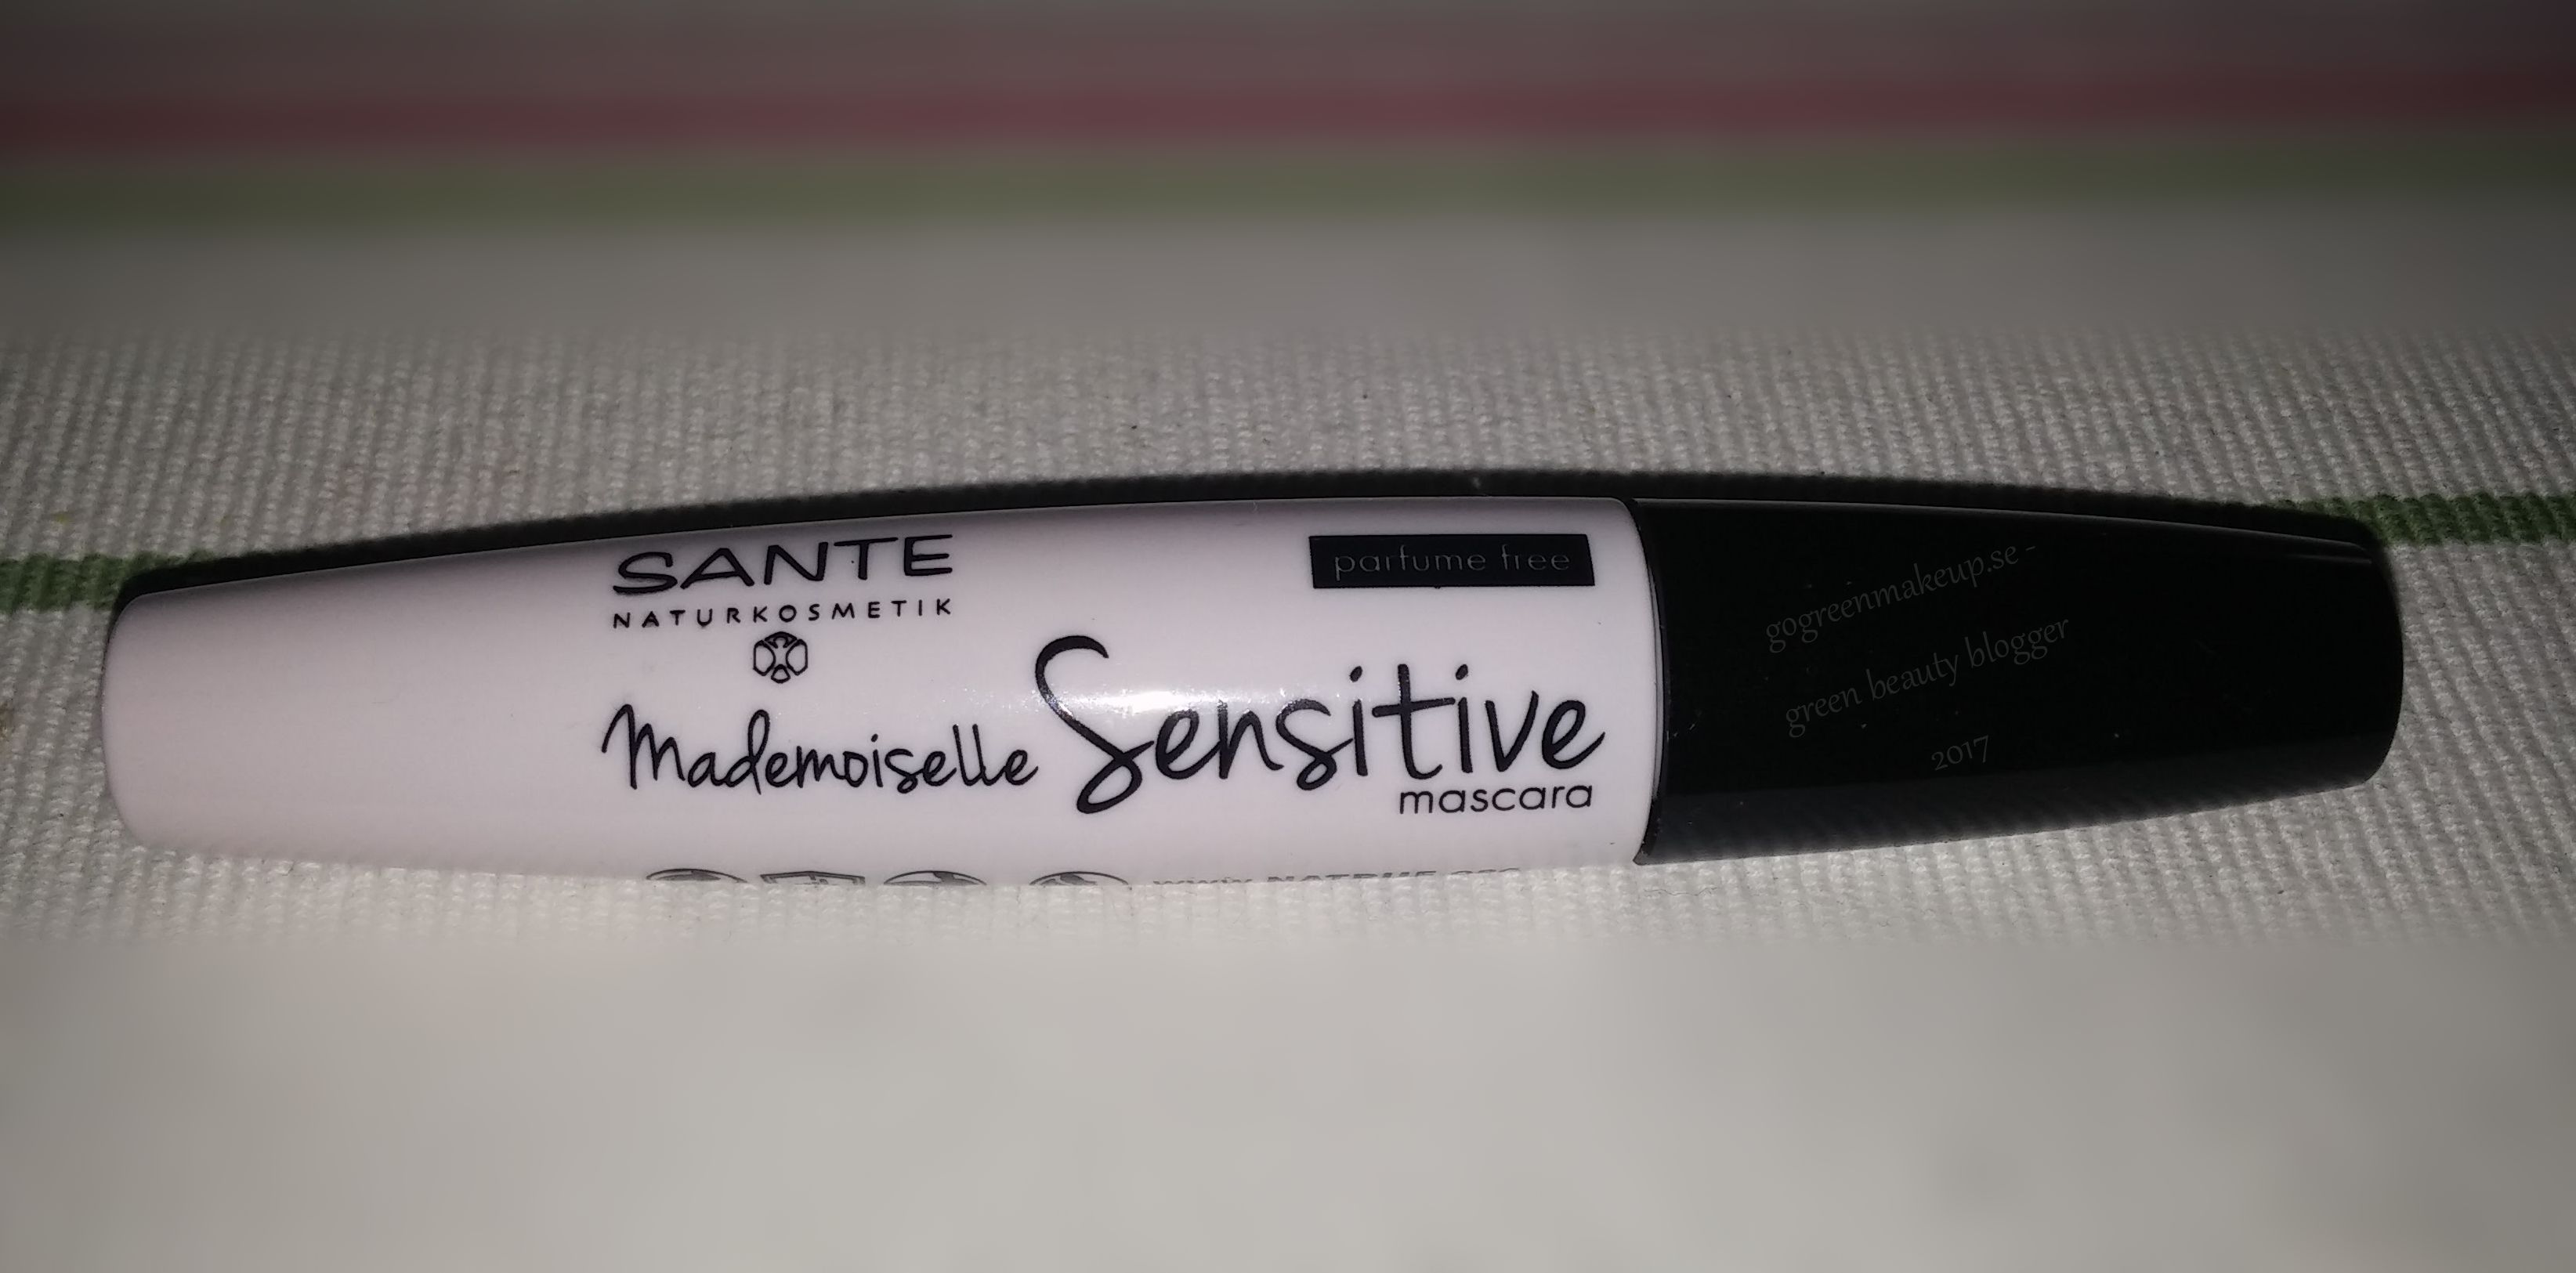 Mascara Mademoiselle Sensitive